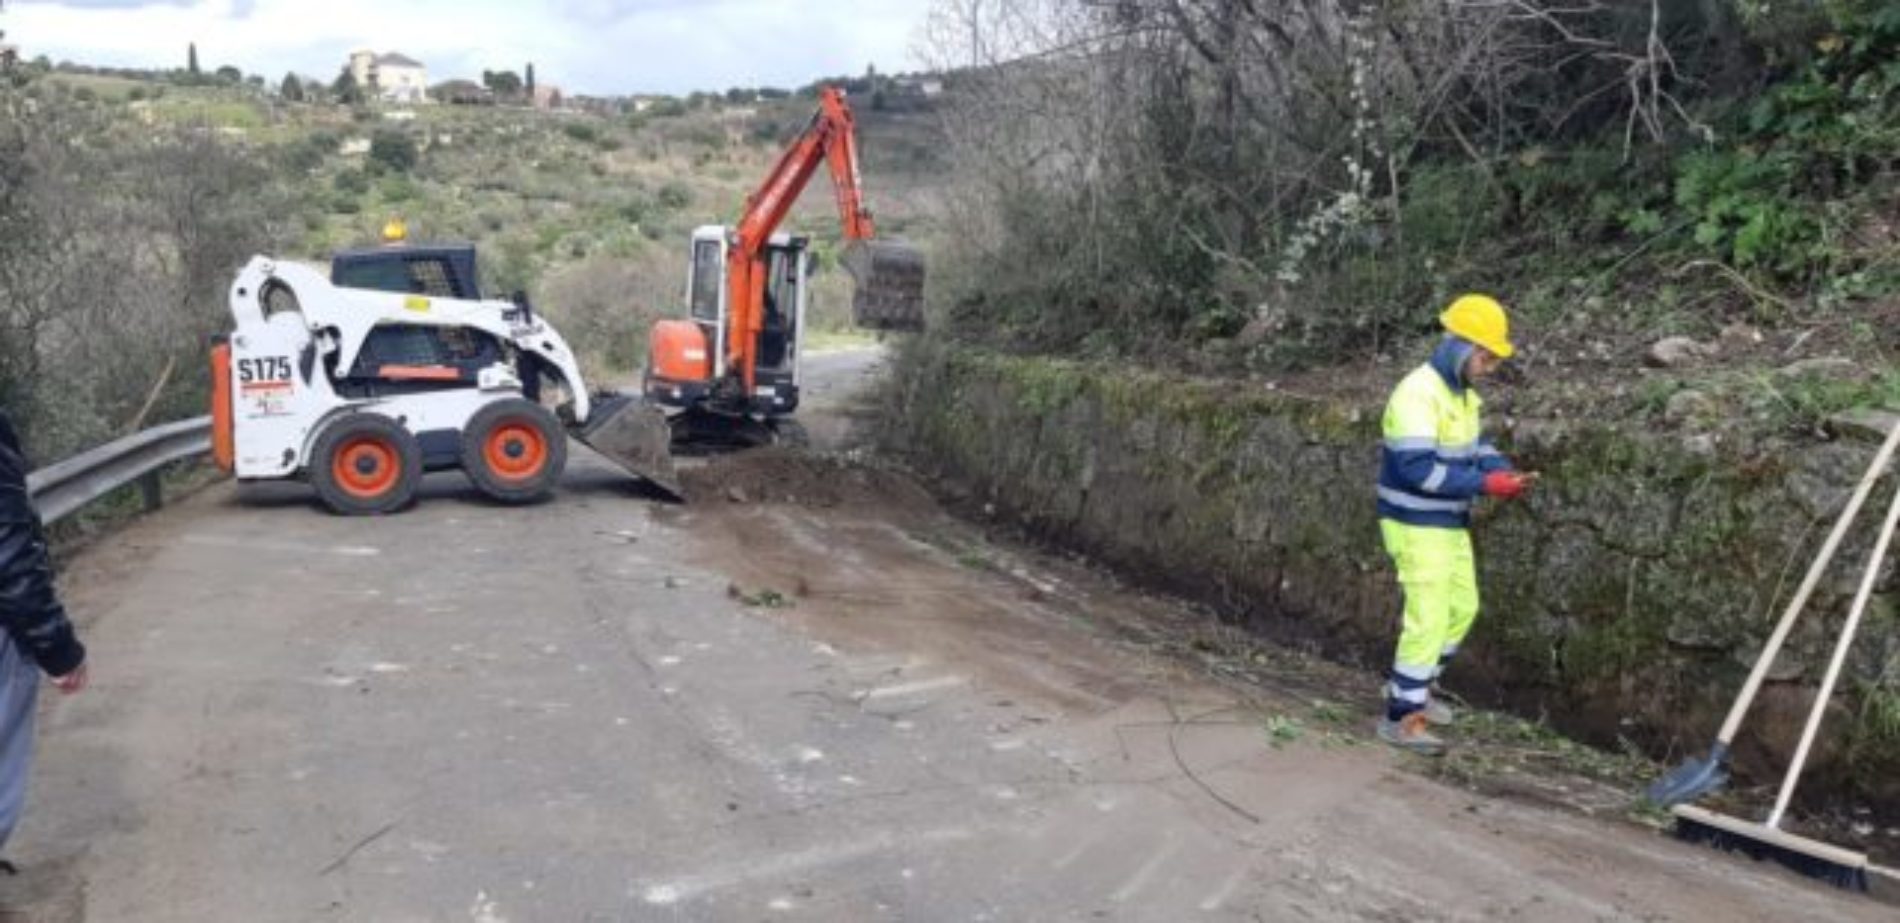 Al via risanamento sp Piazza Aarmerina-Mirabella e Mirabella-San Cono Falcone: “manteniamo l’impegno a recuperare la viabilità provinciale”